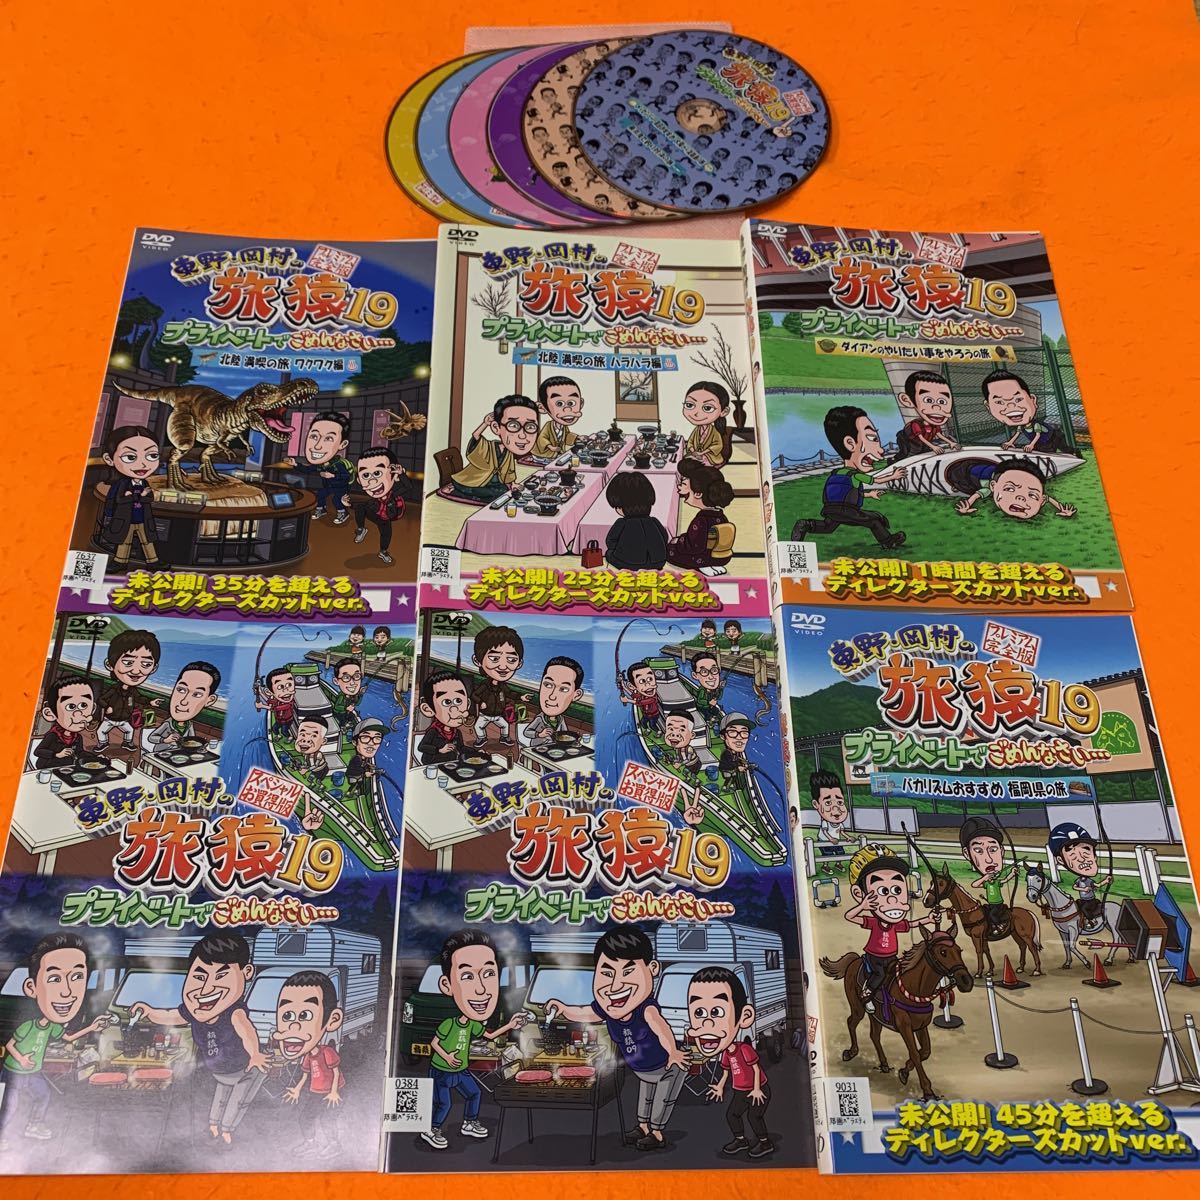 旅猿19 東野・岡村の旅猿19 DVD 全巻セット　送料無料　全6巻